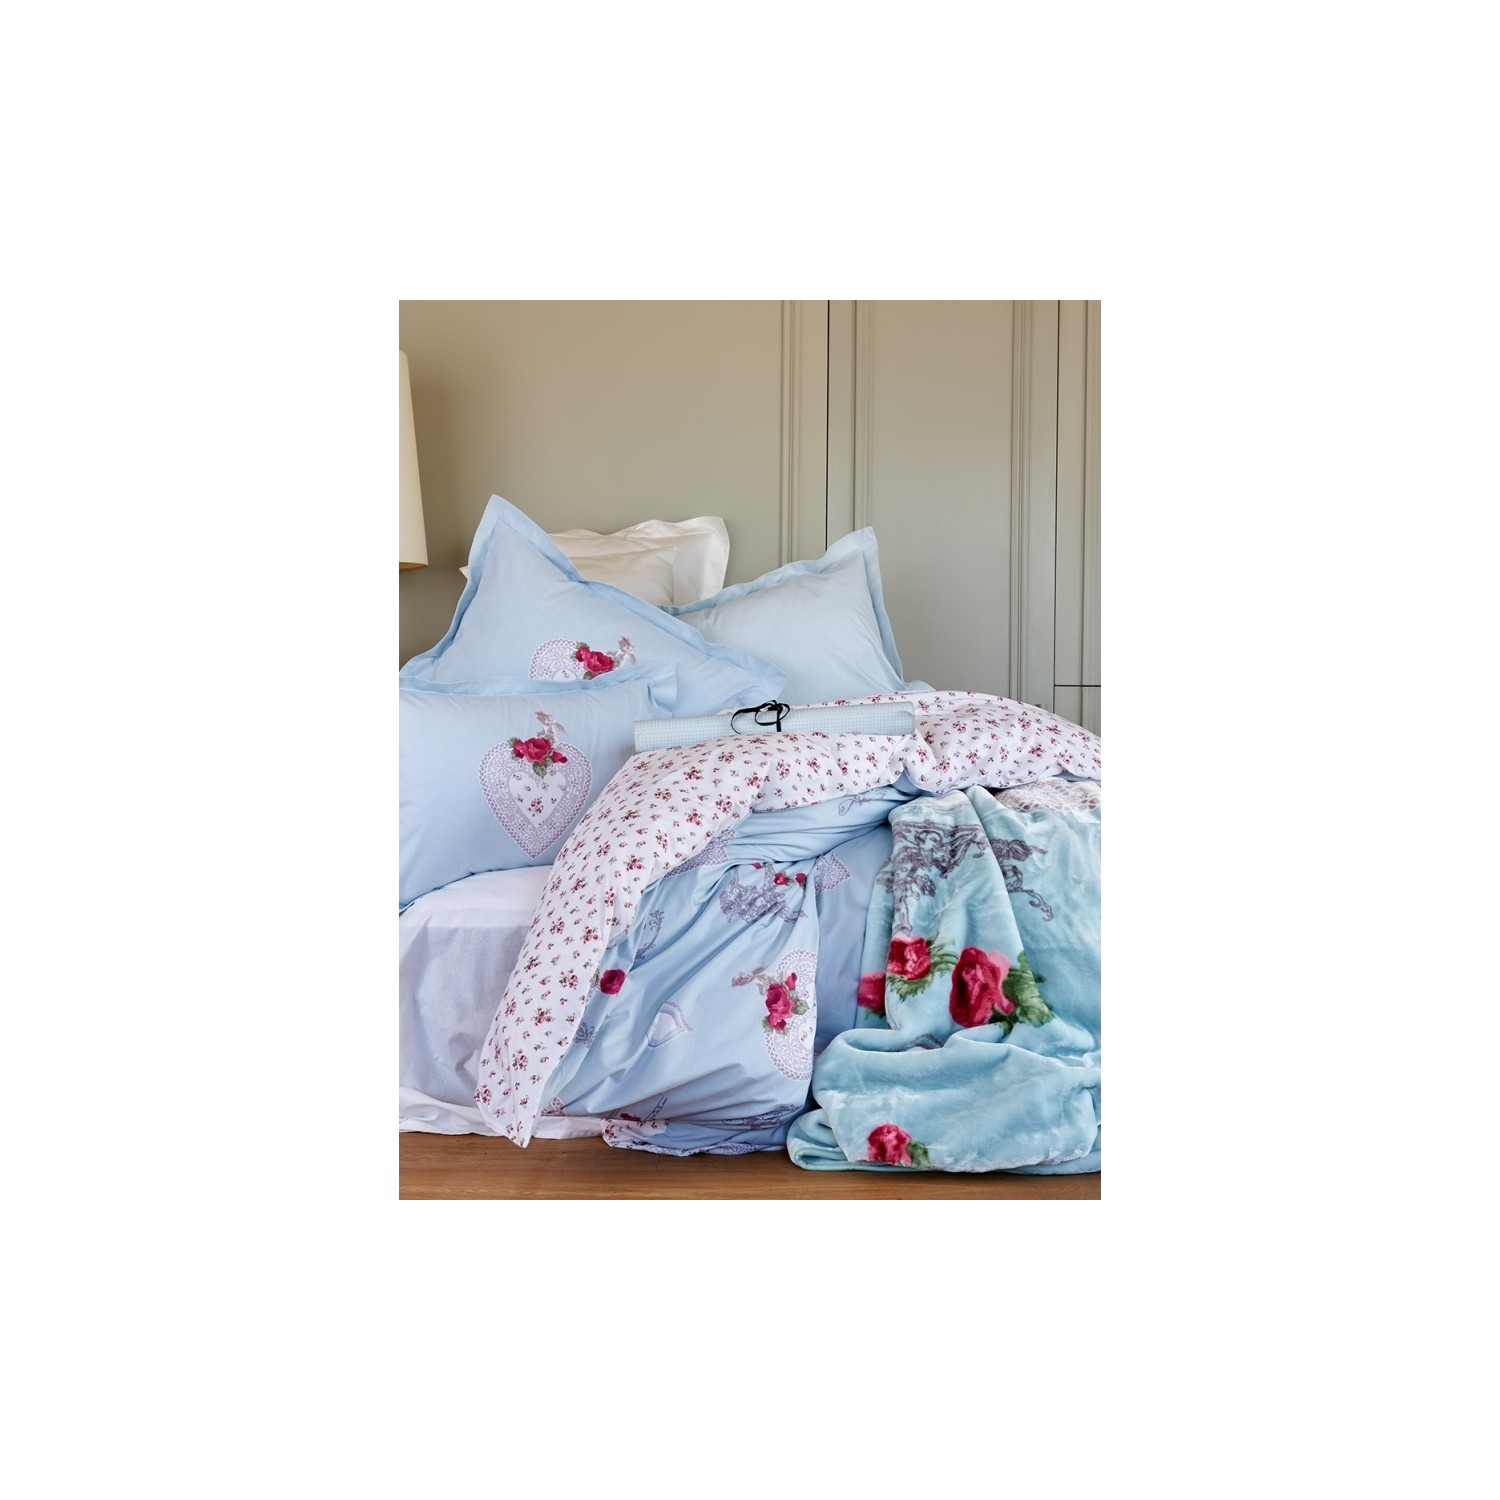 комплект постельного белья с вышивкой karaca home Комплект постельного белья Karaca Home Sasha Ranforce